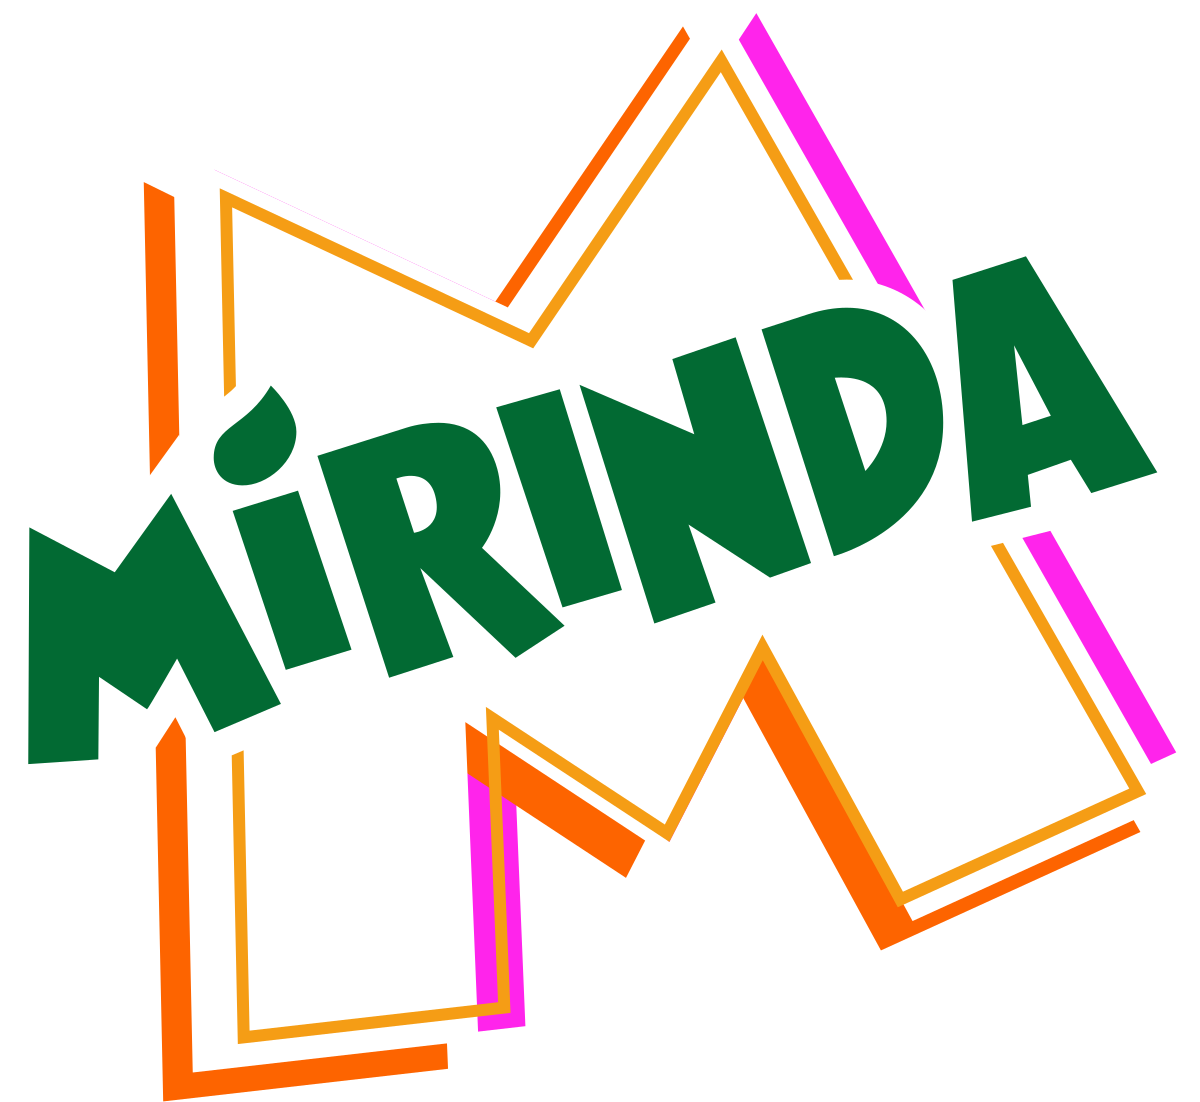 File:Mirinda brand logo.png - Wikipedia